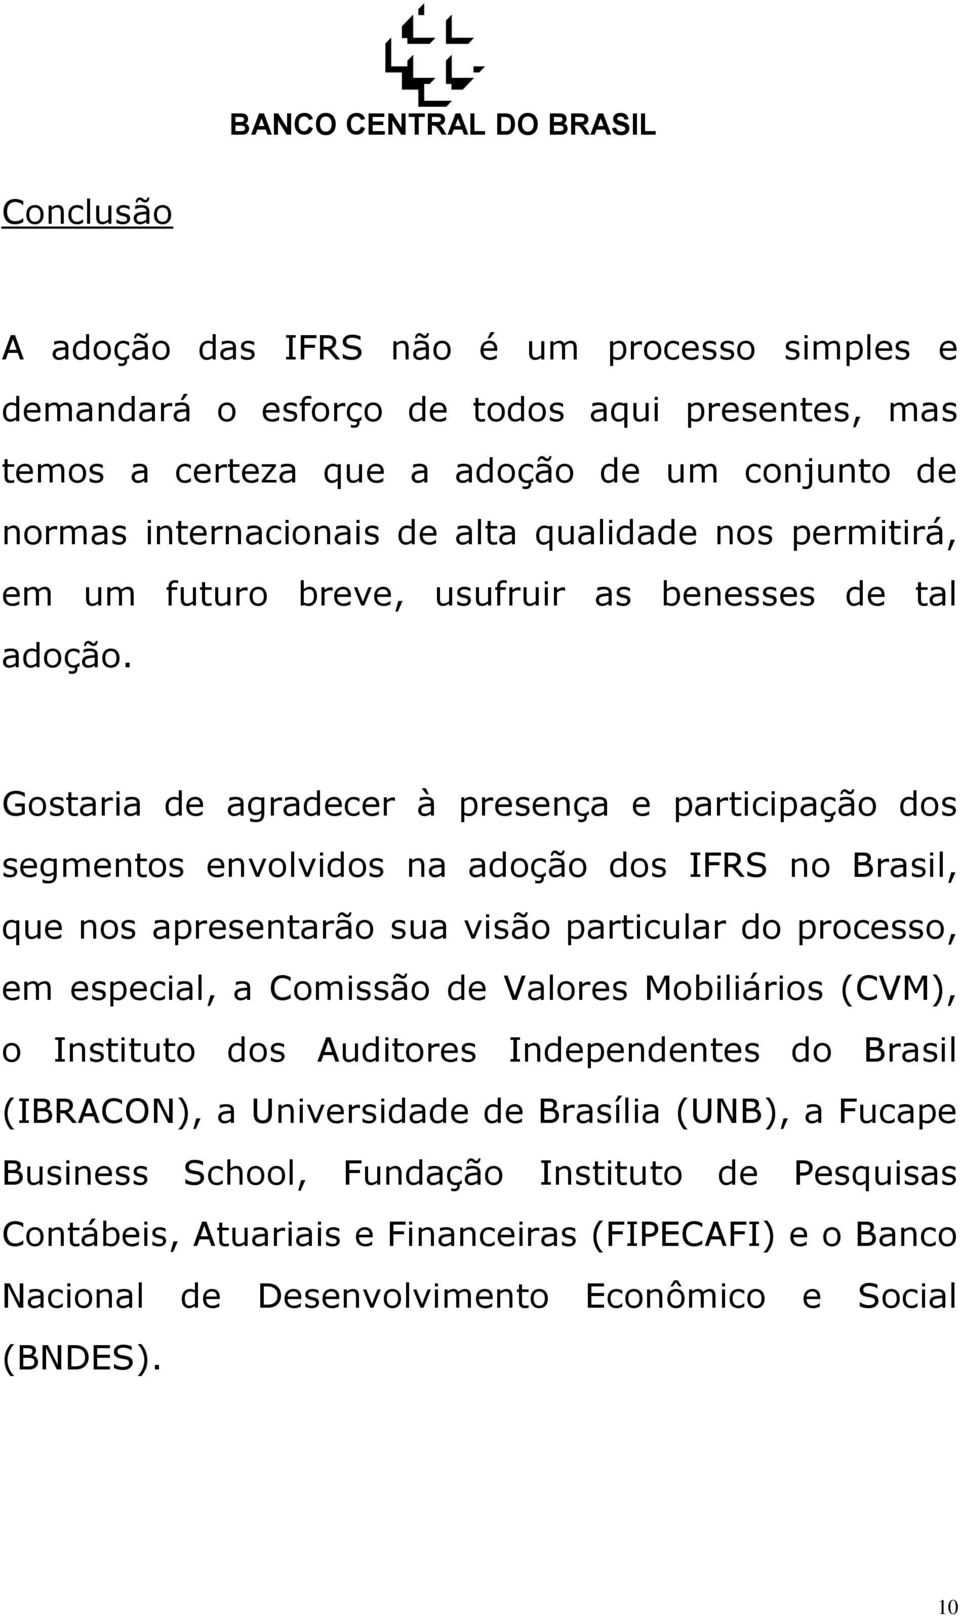 Gostaria de agradecer à presença e participação dos segmentos envolvidos na adoção dos IFRS no Brasil, que nos apresentarão sua visão particular do processo, em especial, a Comissão de